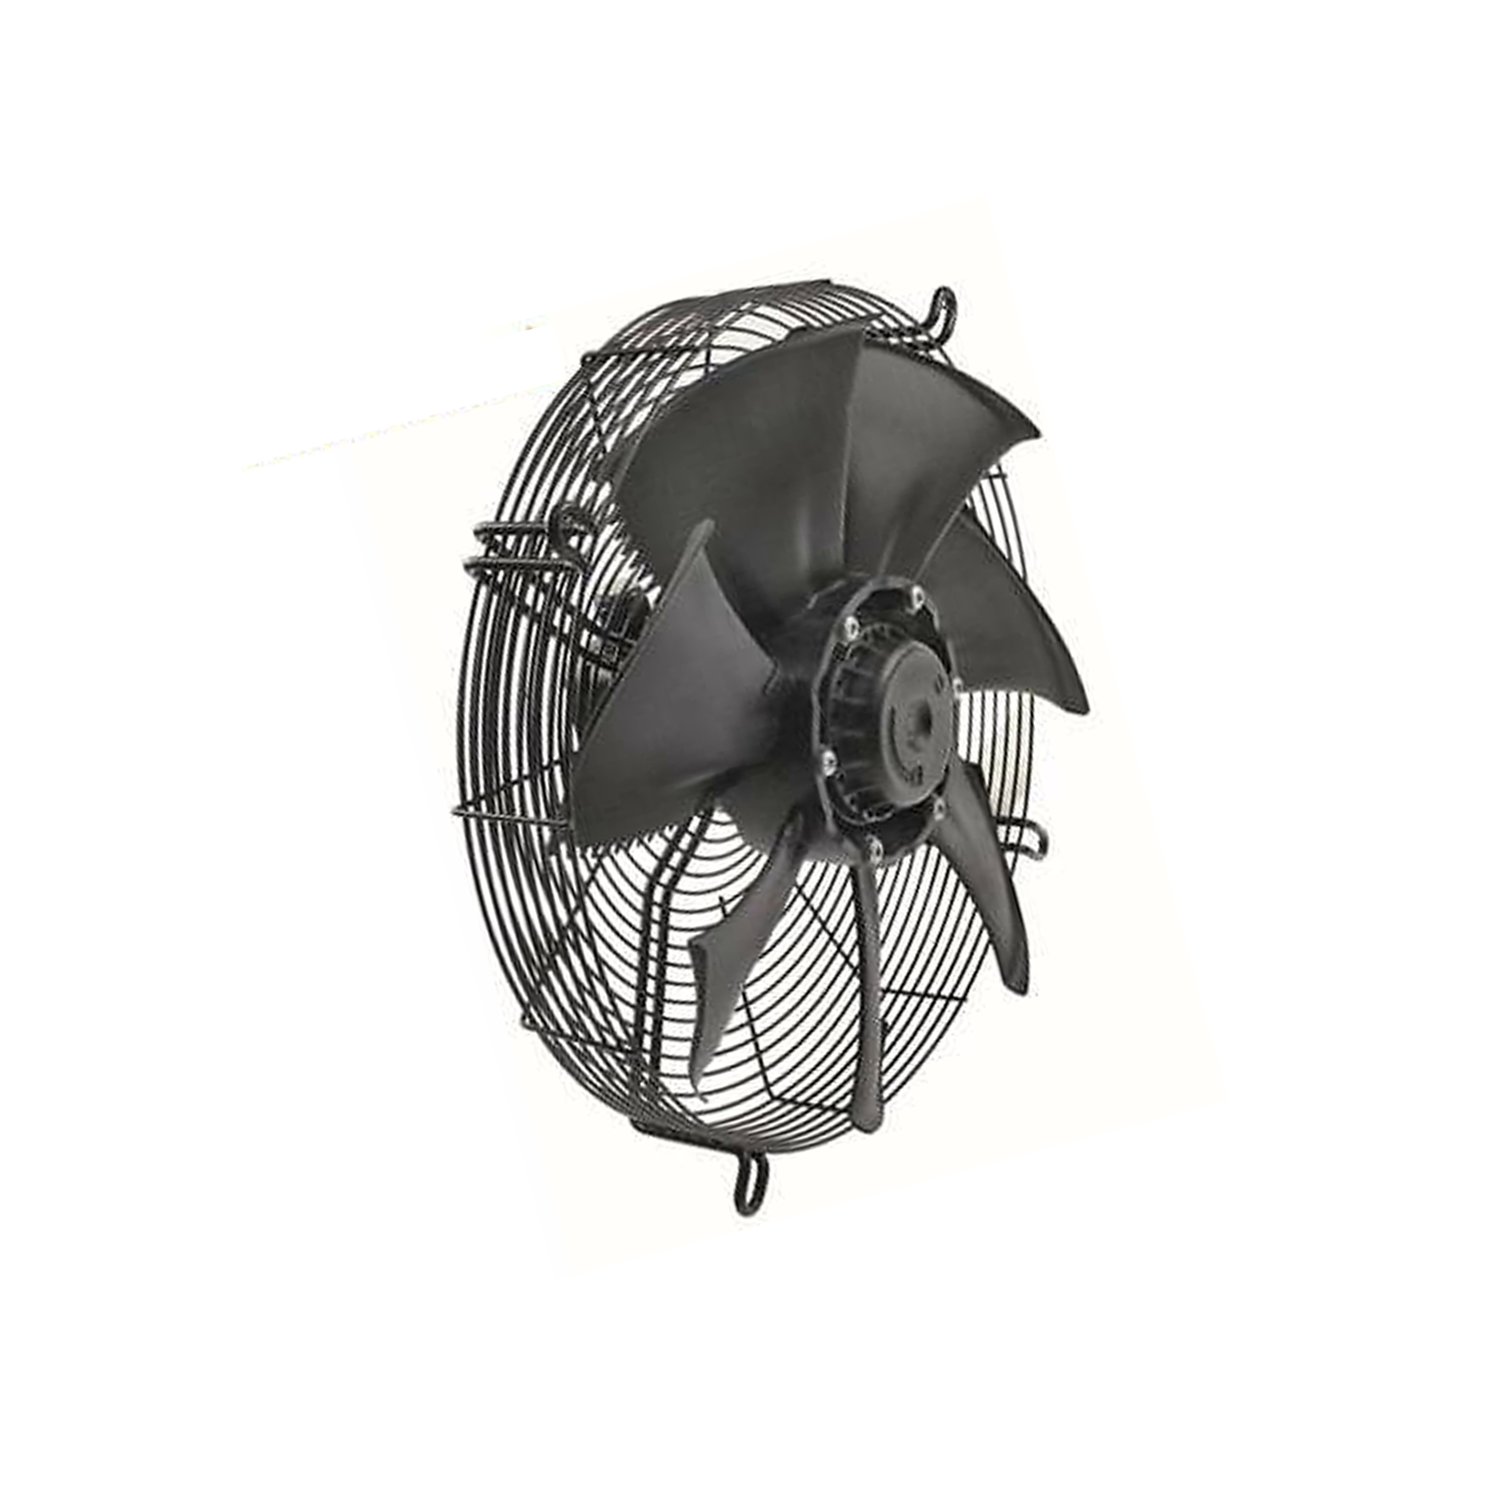 Suction fan d = 400 mm, 400V/3F/50 Hz, 4-pole, Ziehl-Abegg, FN040